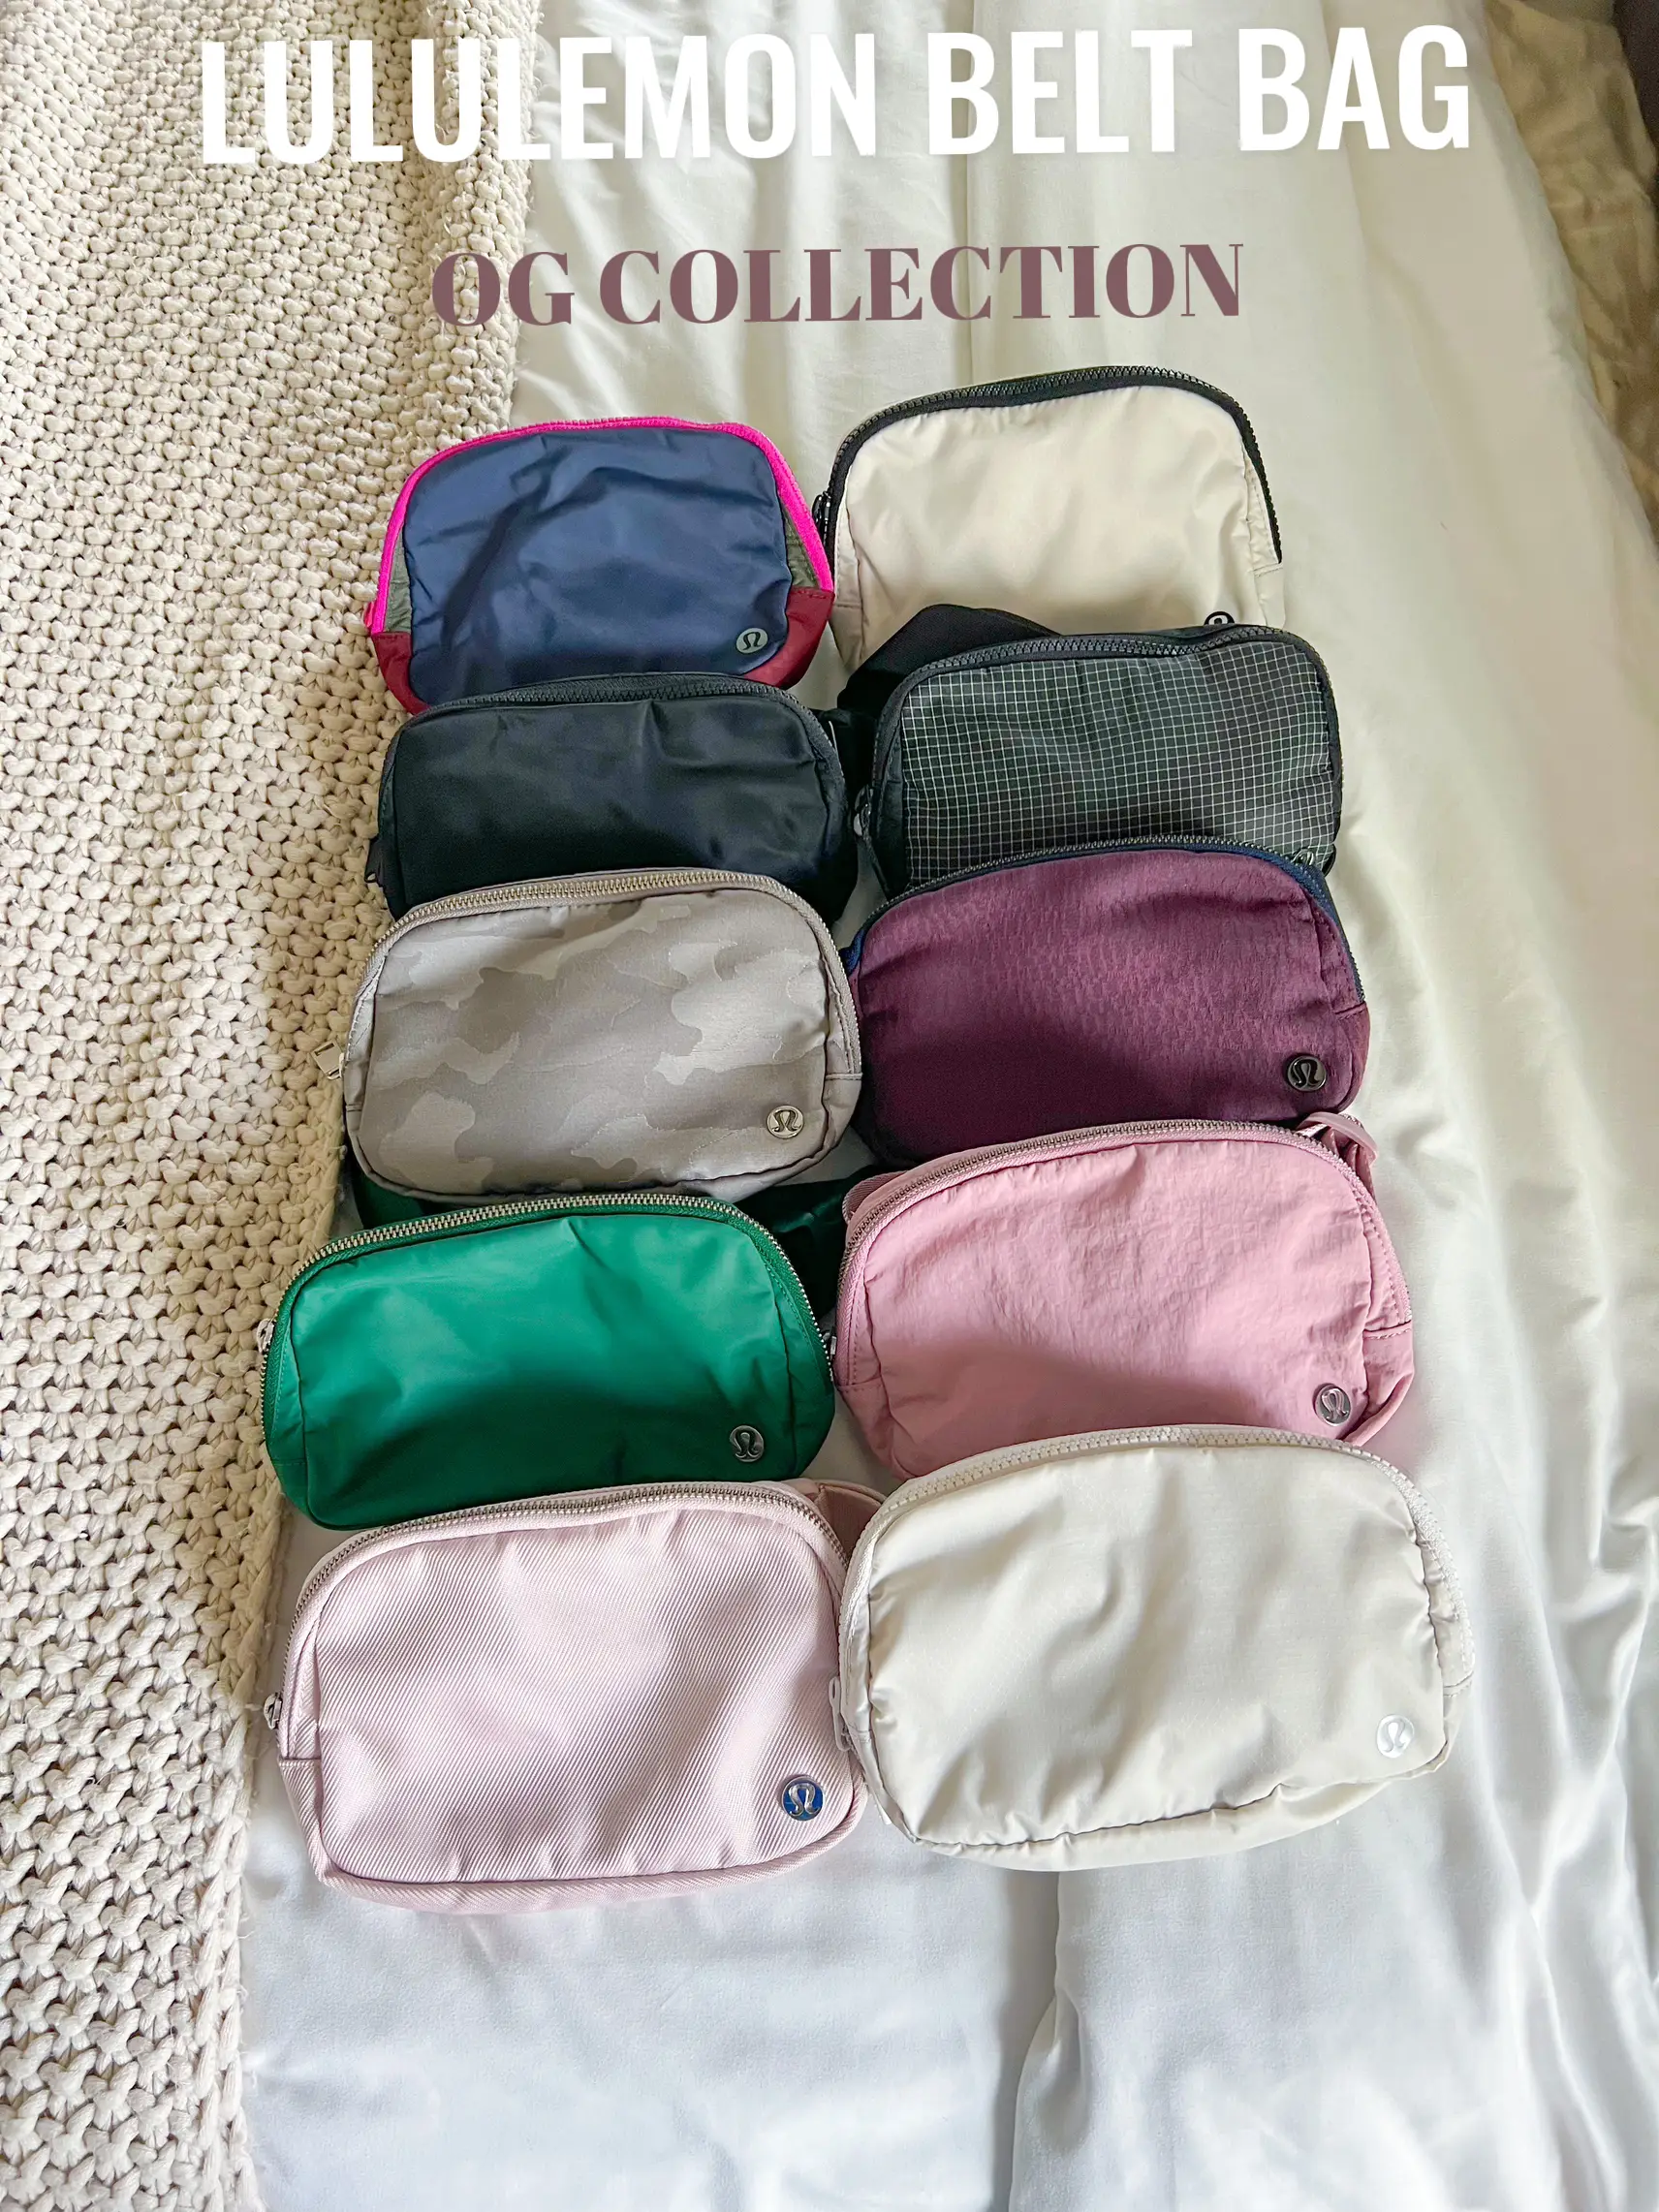 Lululemon Belt Bag OG Collection!, Gallery posted by lmvilla